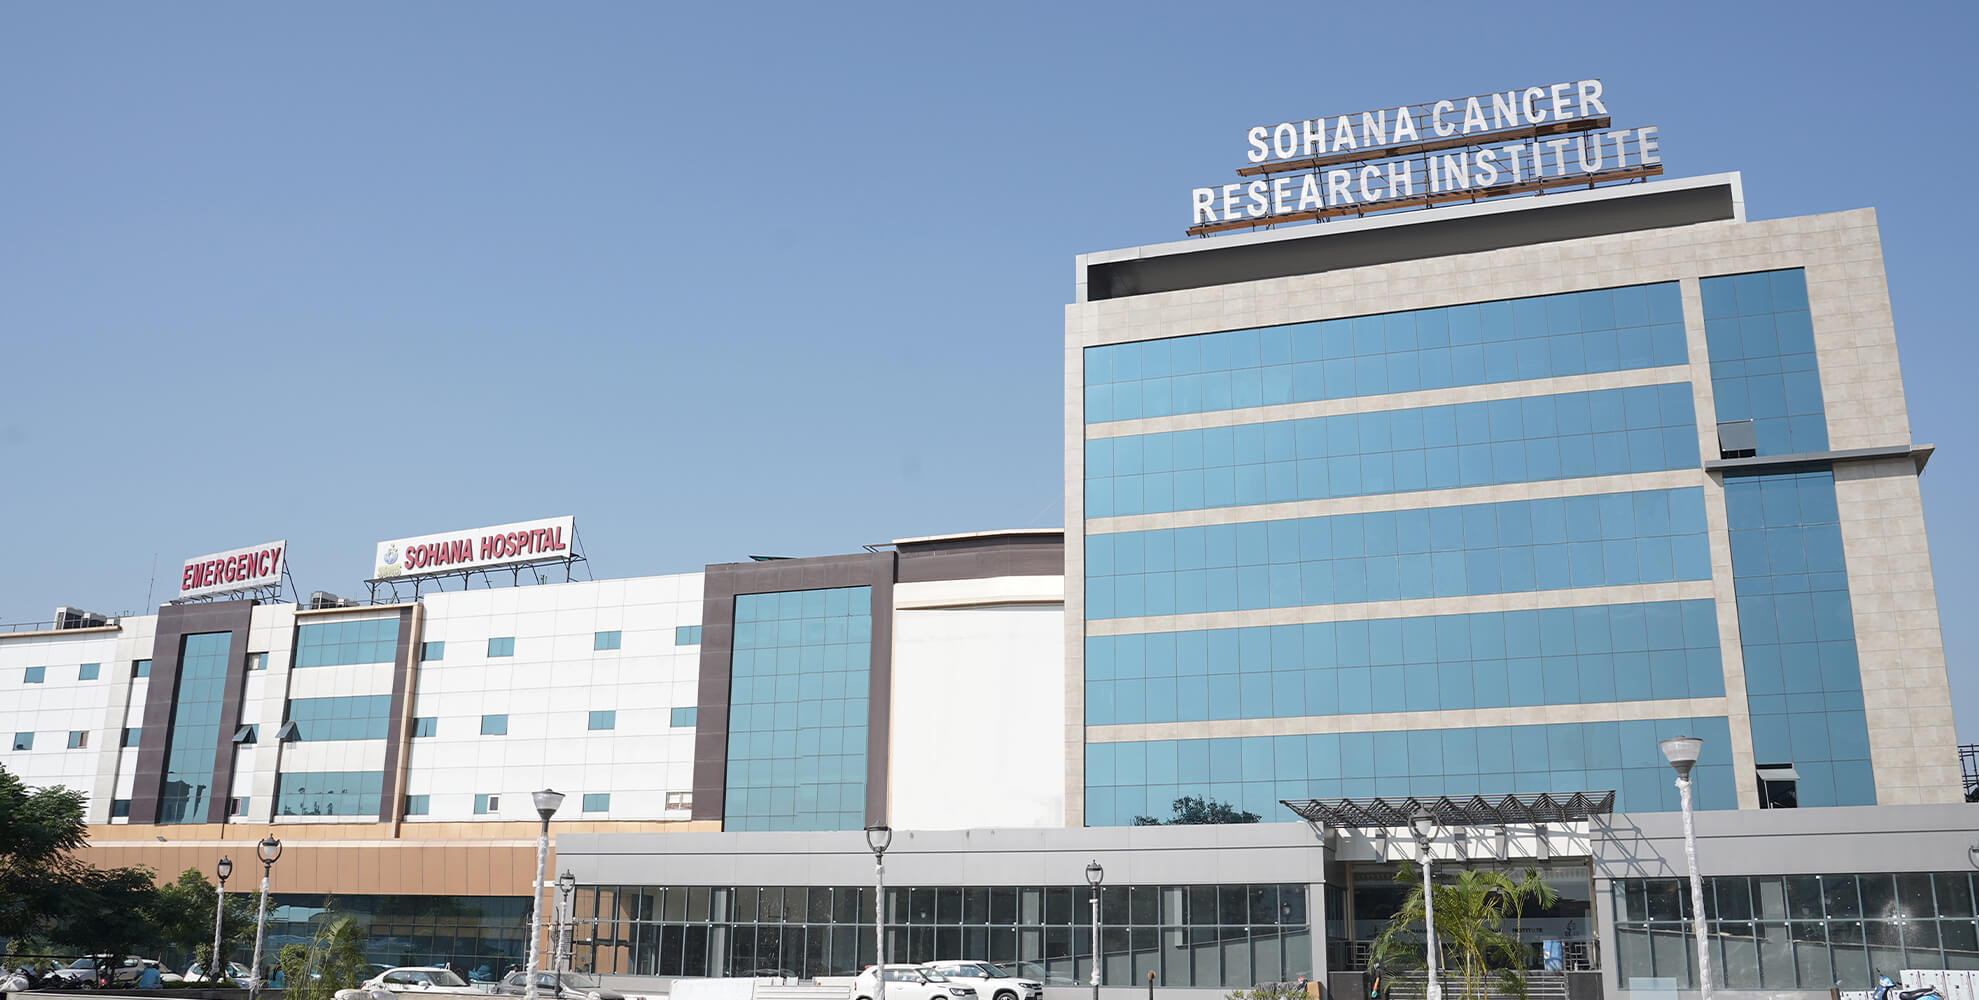 Sohana Cancer Research Institute Main